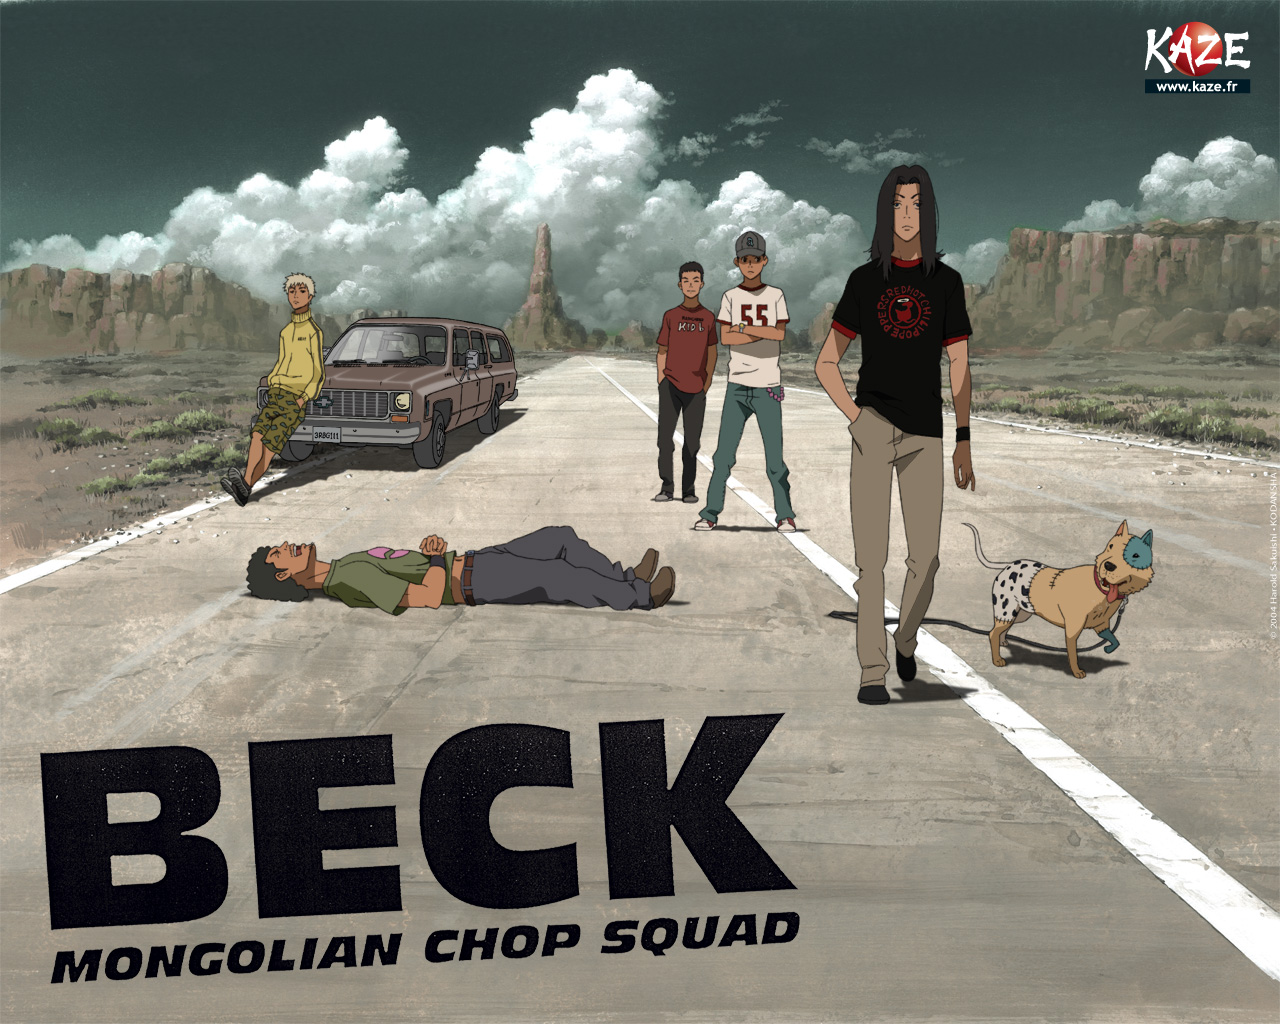 Wallpaper de Beck, réalisé par Kaze